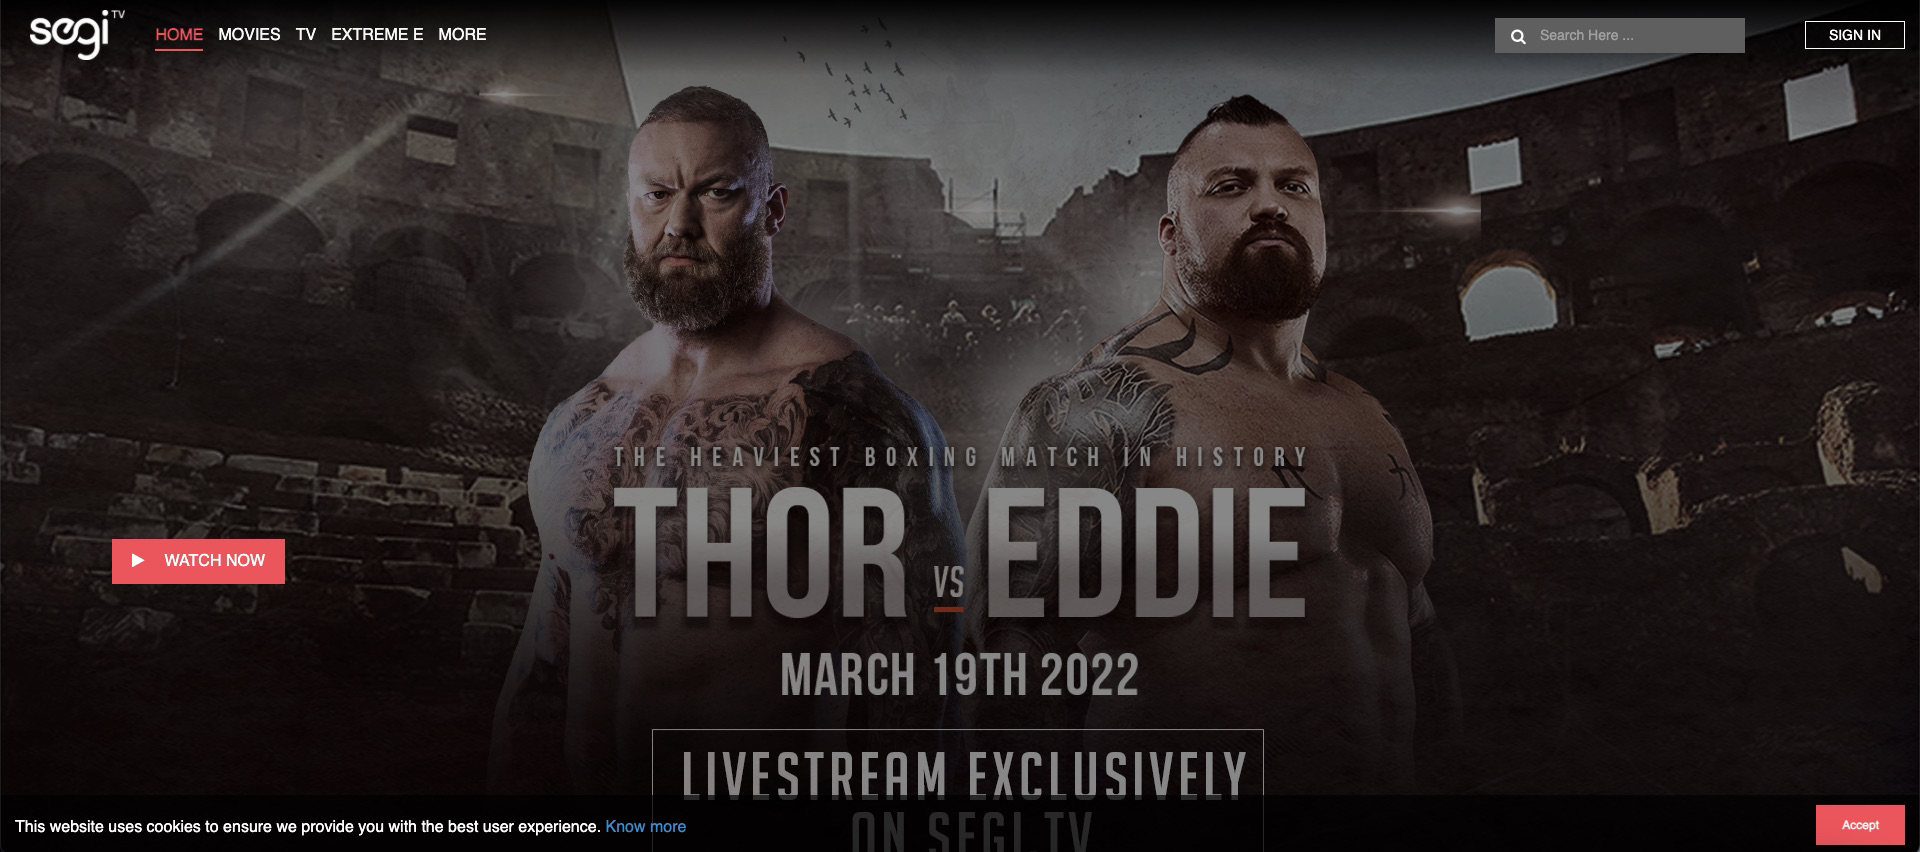 eddie hall vs thor live streaming